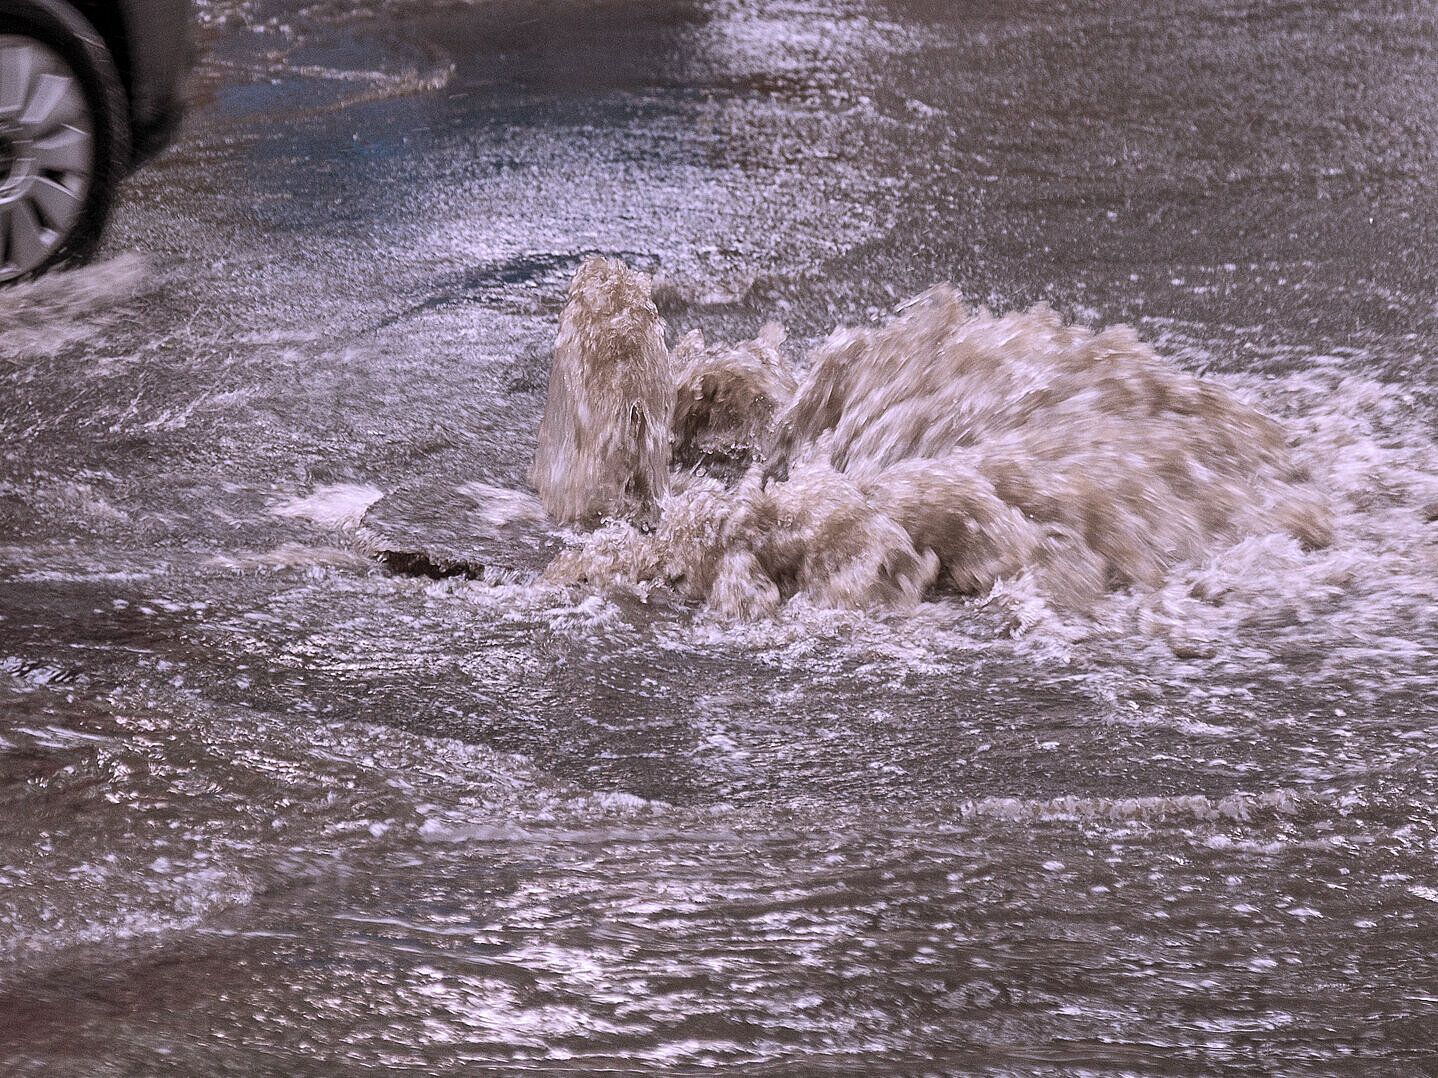 Wasser quillt aus dem Gullideckel infolge einer Kanalüberlastung durch Starkregen.